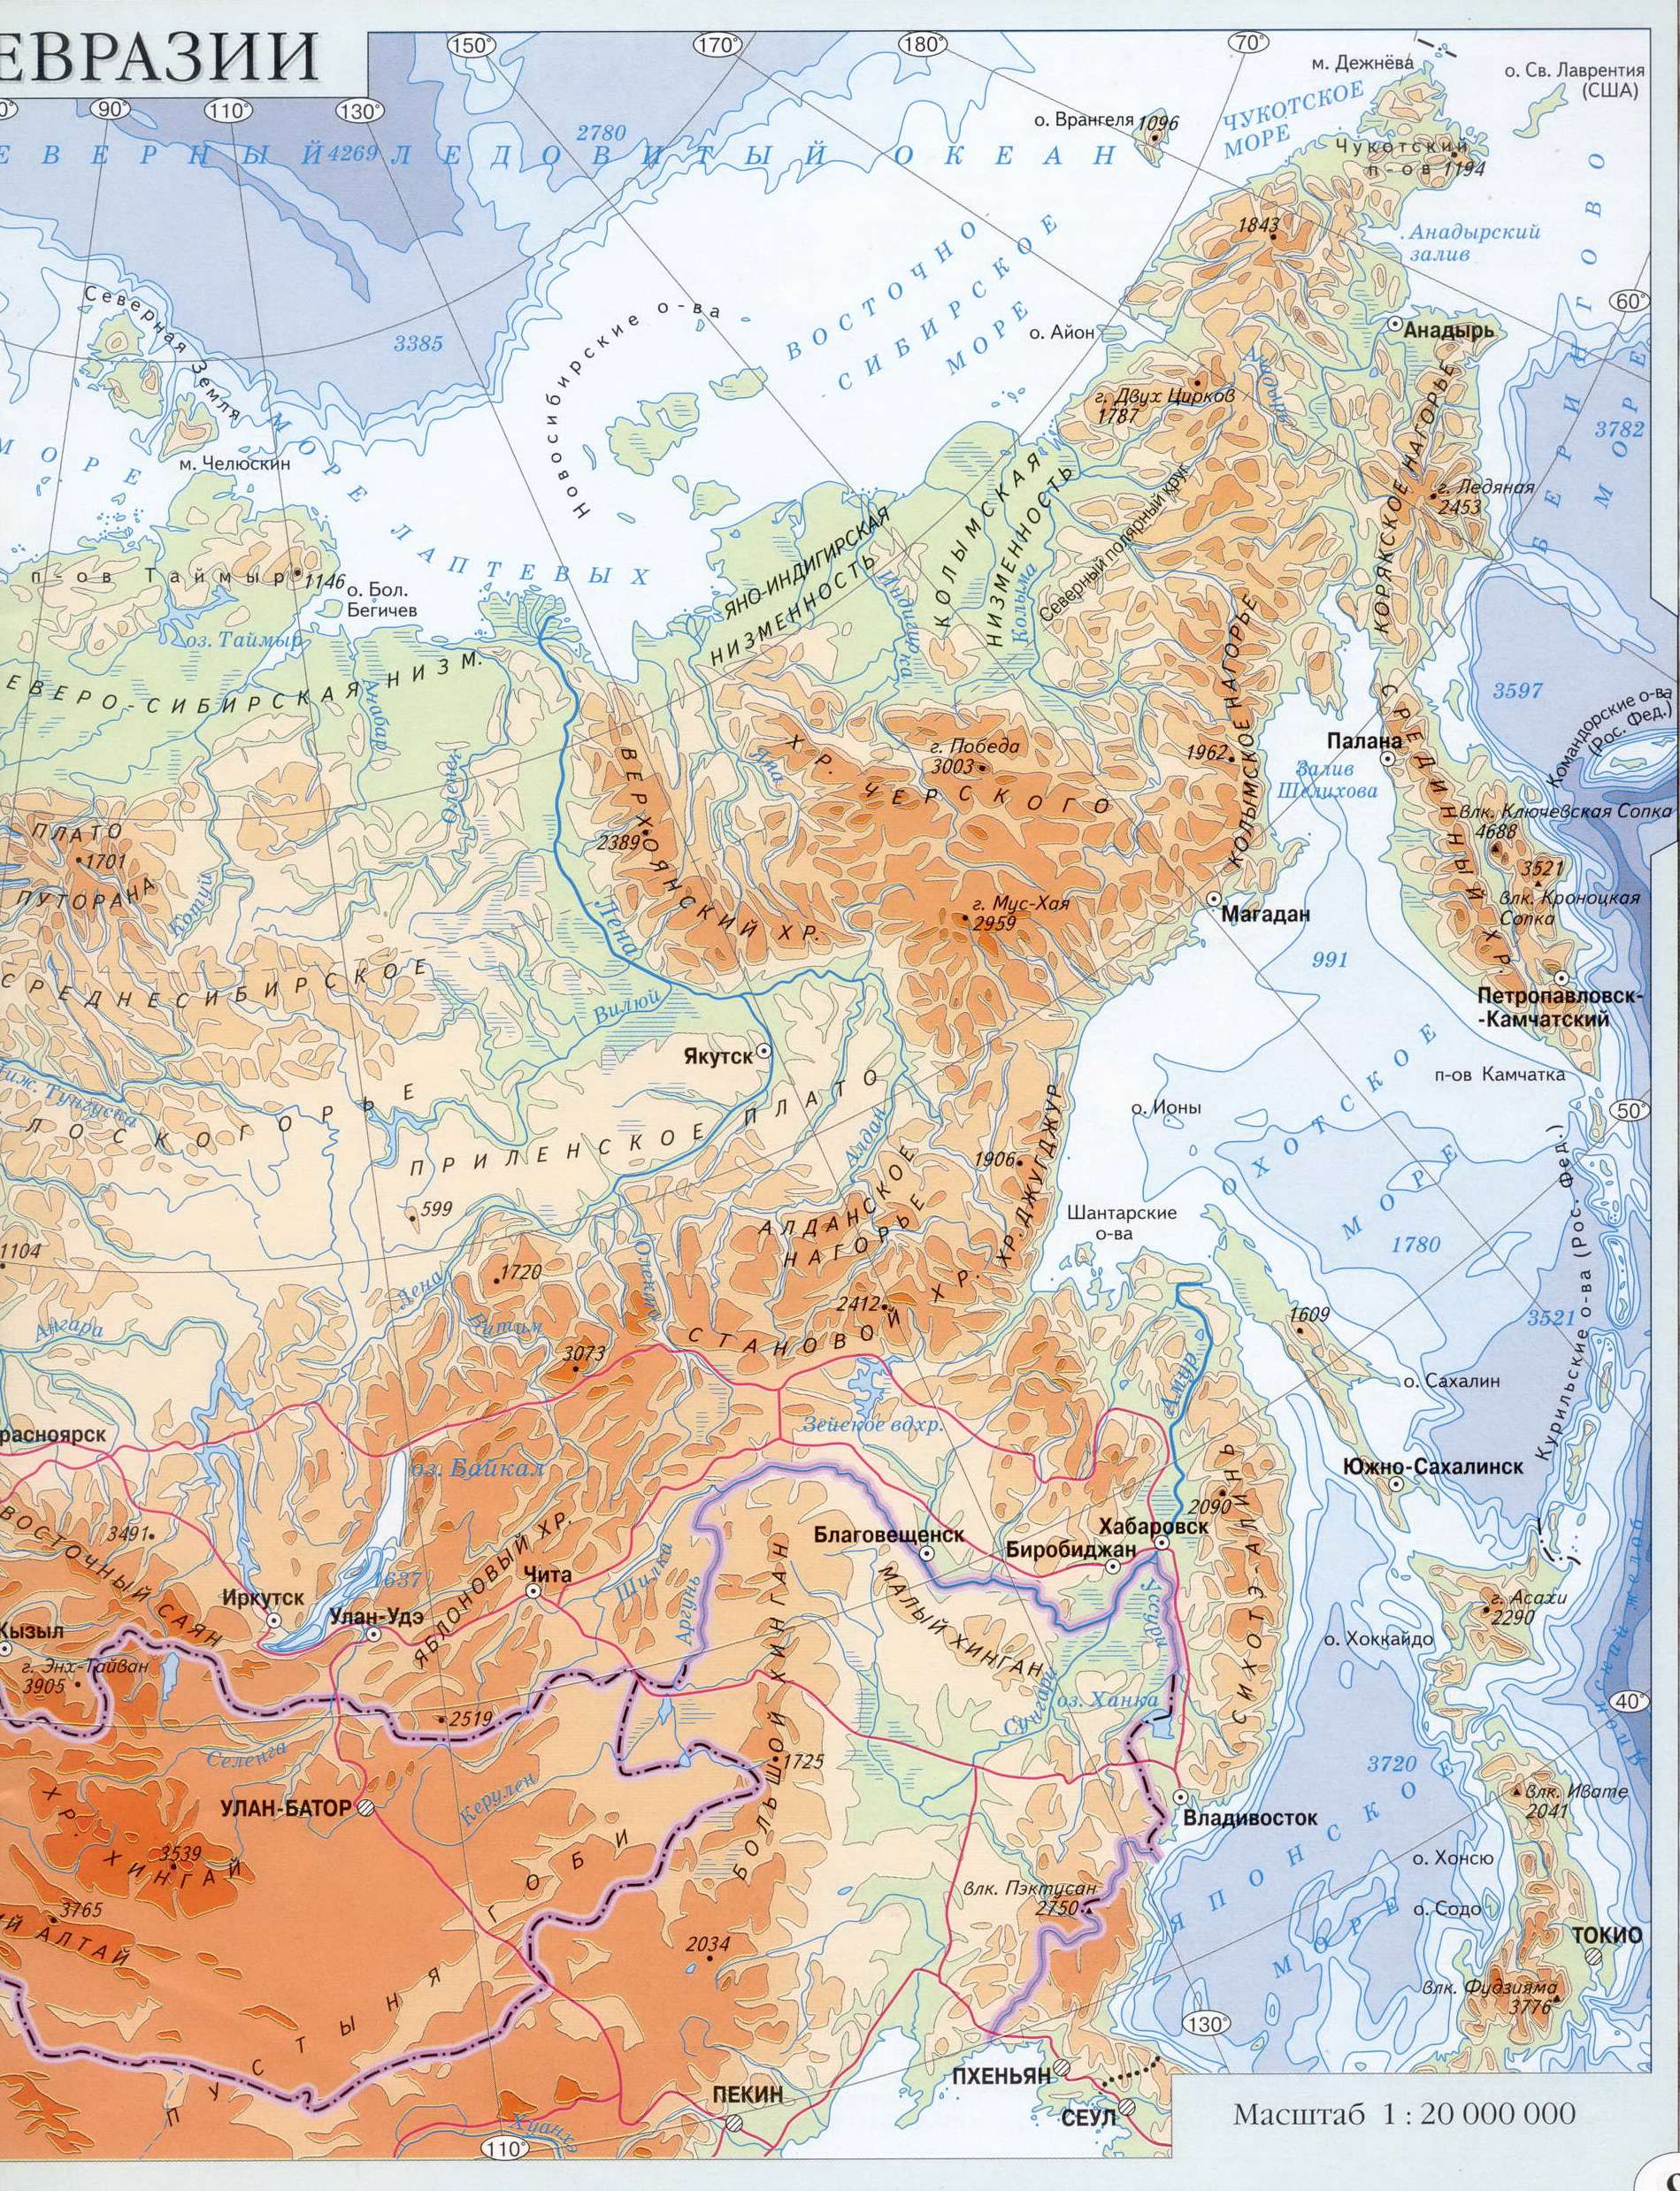  Карта России. Физическая карта России. Подробная карта России. Карта северо-восточной Евразии - России, B0 - 